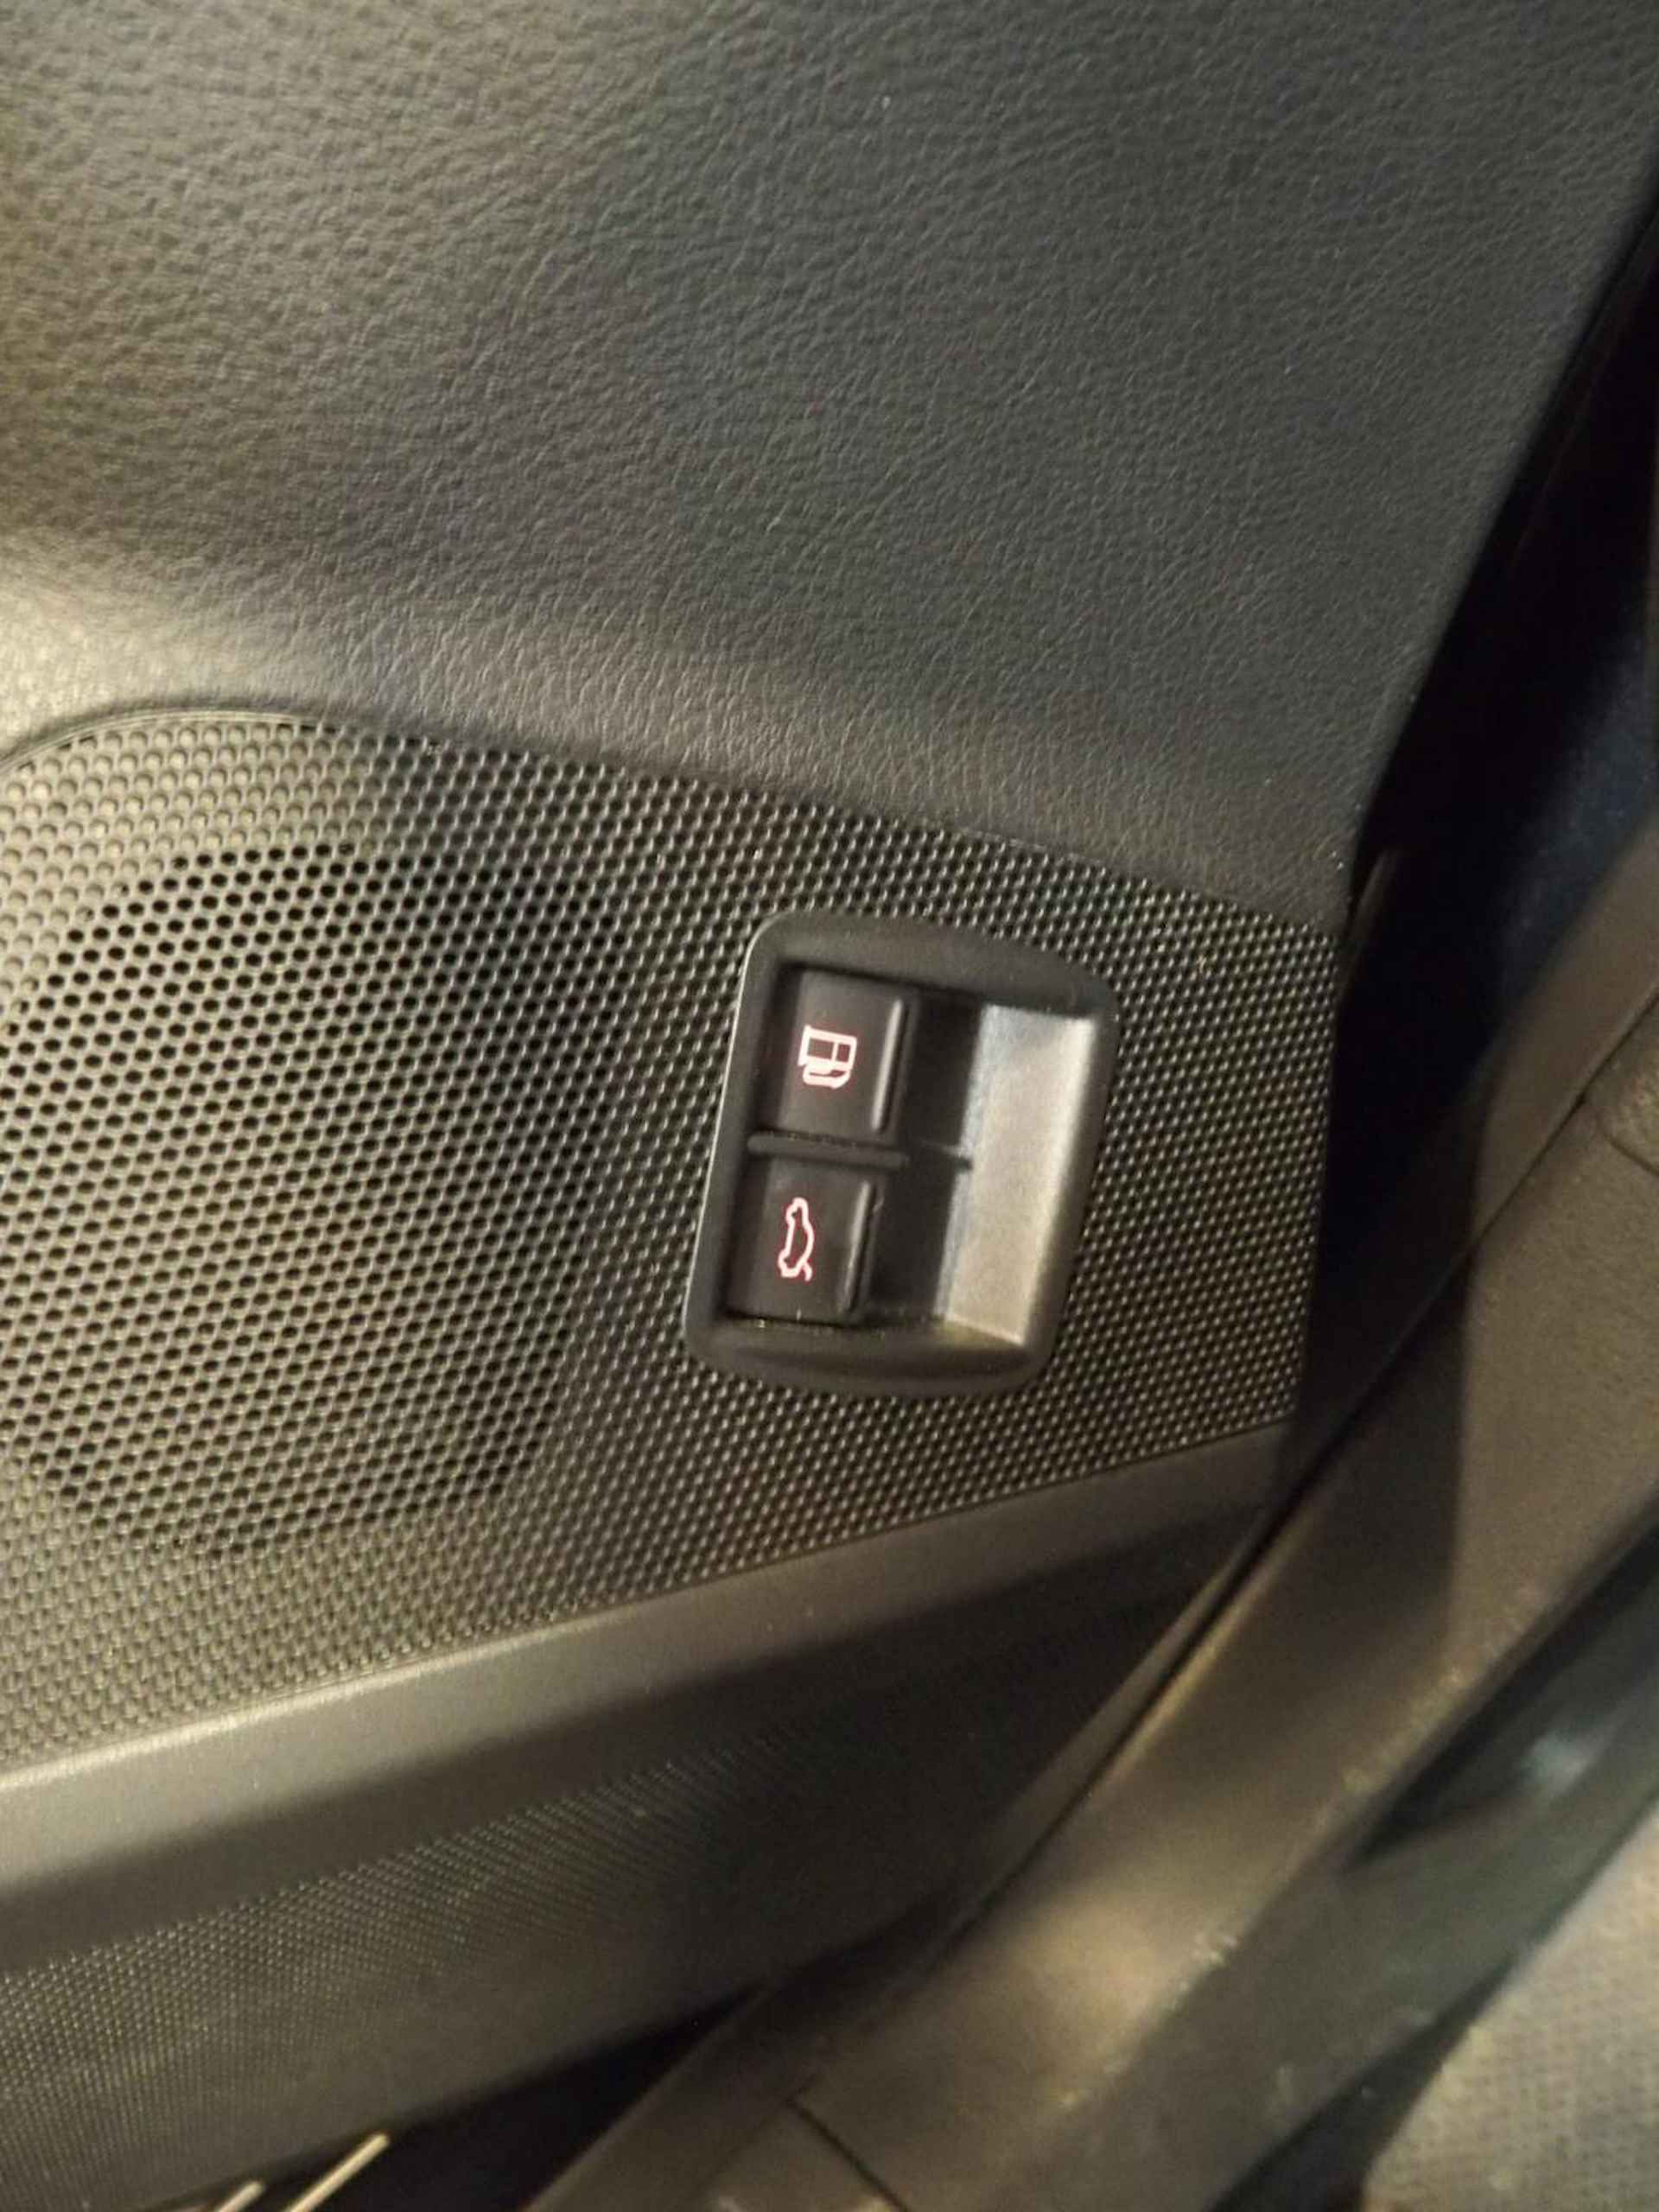 Volkswagen Passat 1.8 TFSI Automaat Comfort-line Trekhaak, automaat, cruise controle, complete OH historie - 24/35